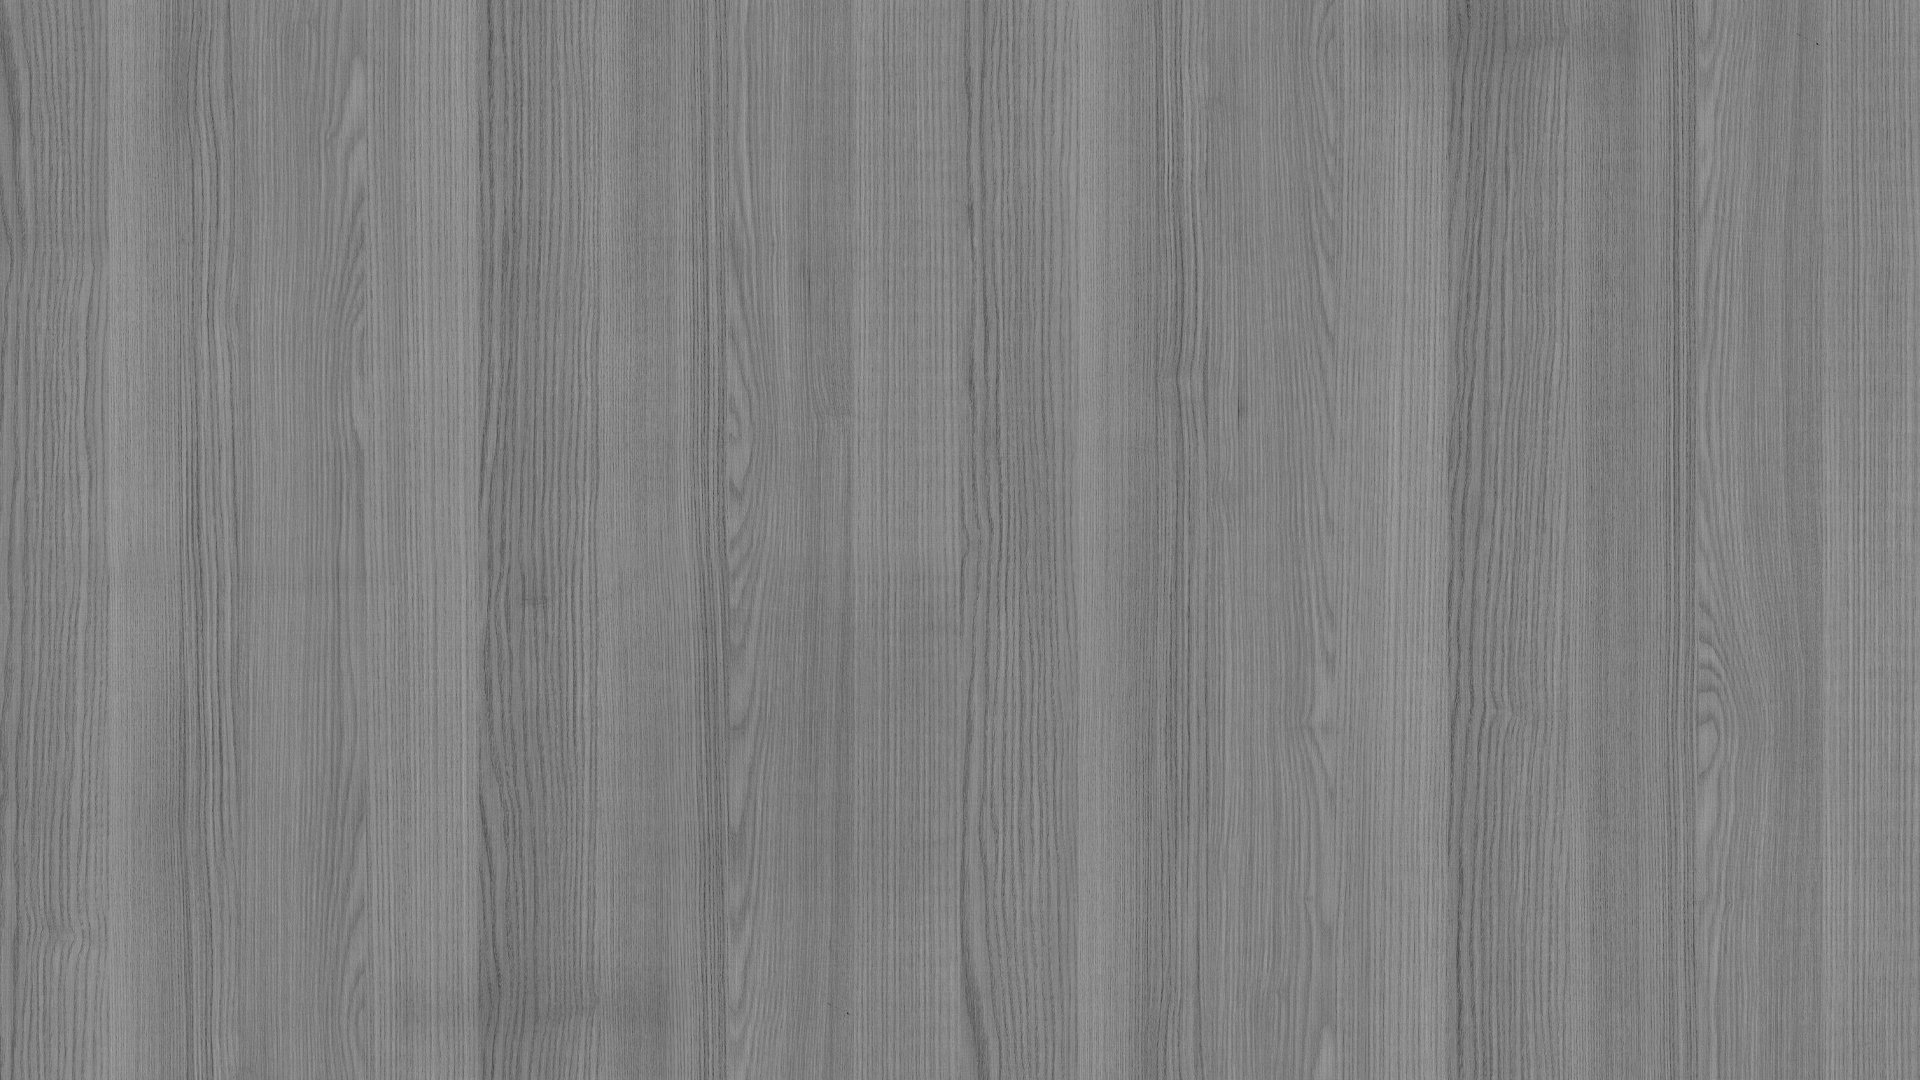 Grey Wood Floor Texture